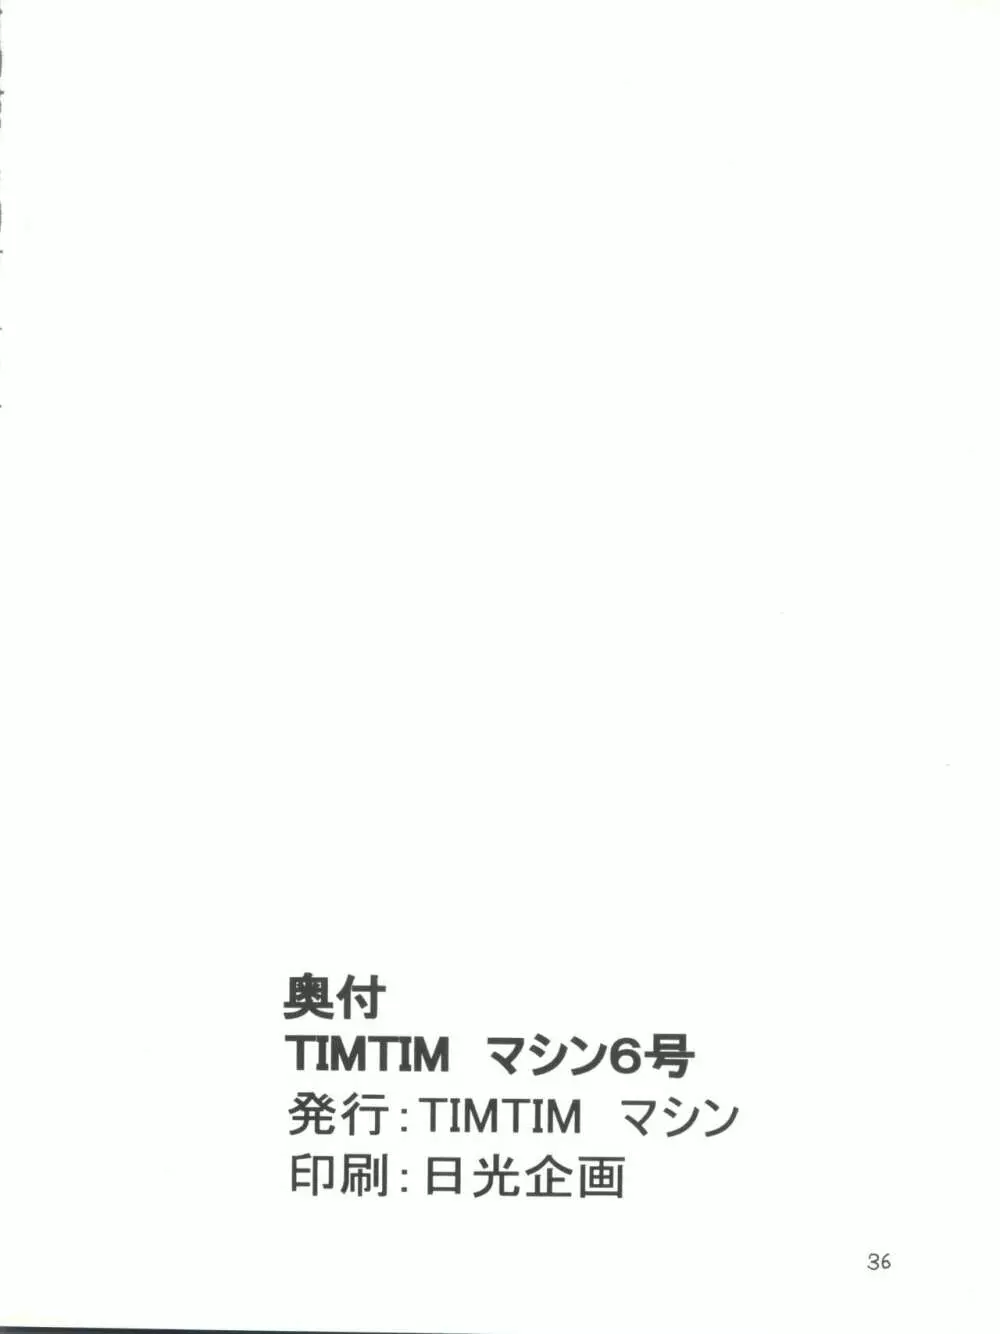 TIMTIMマシン6号 36ページ